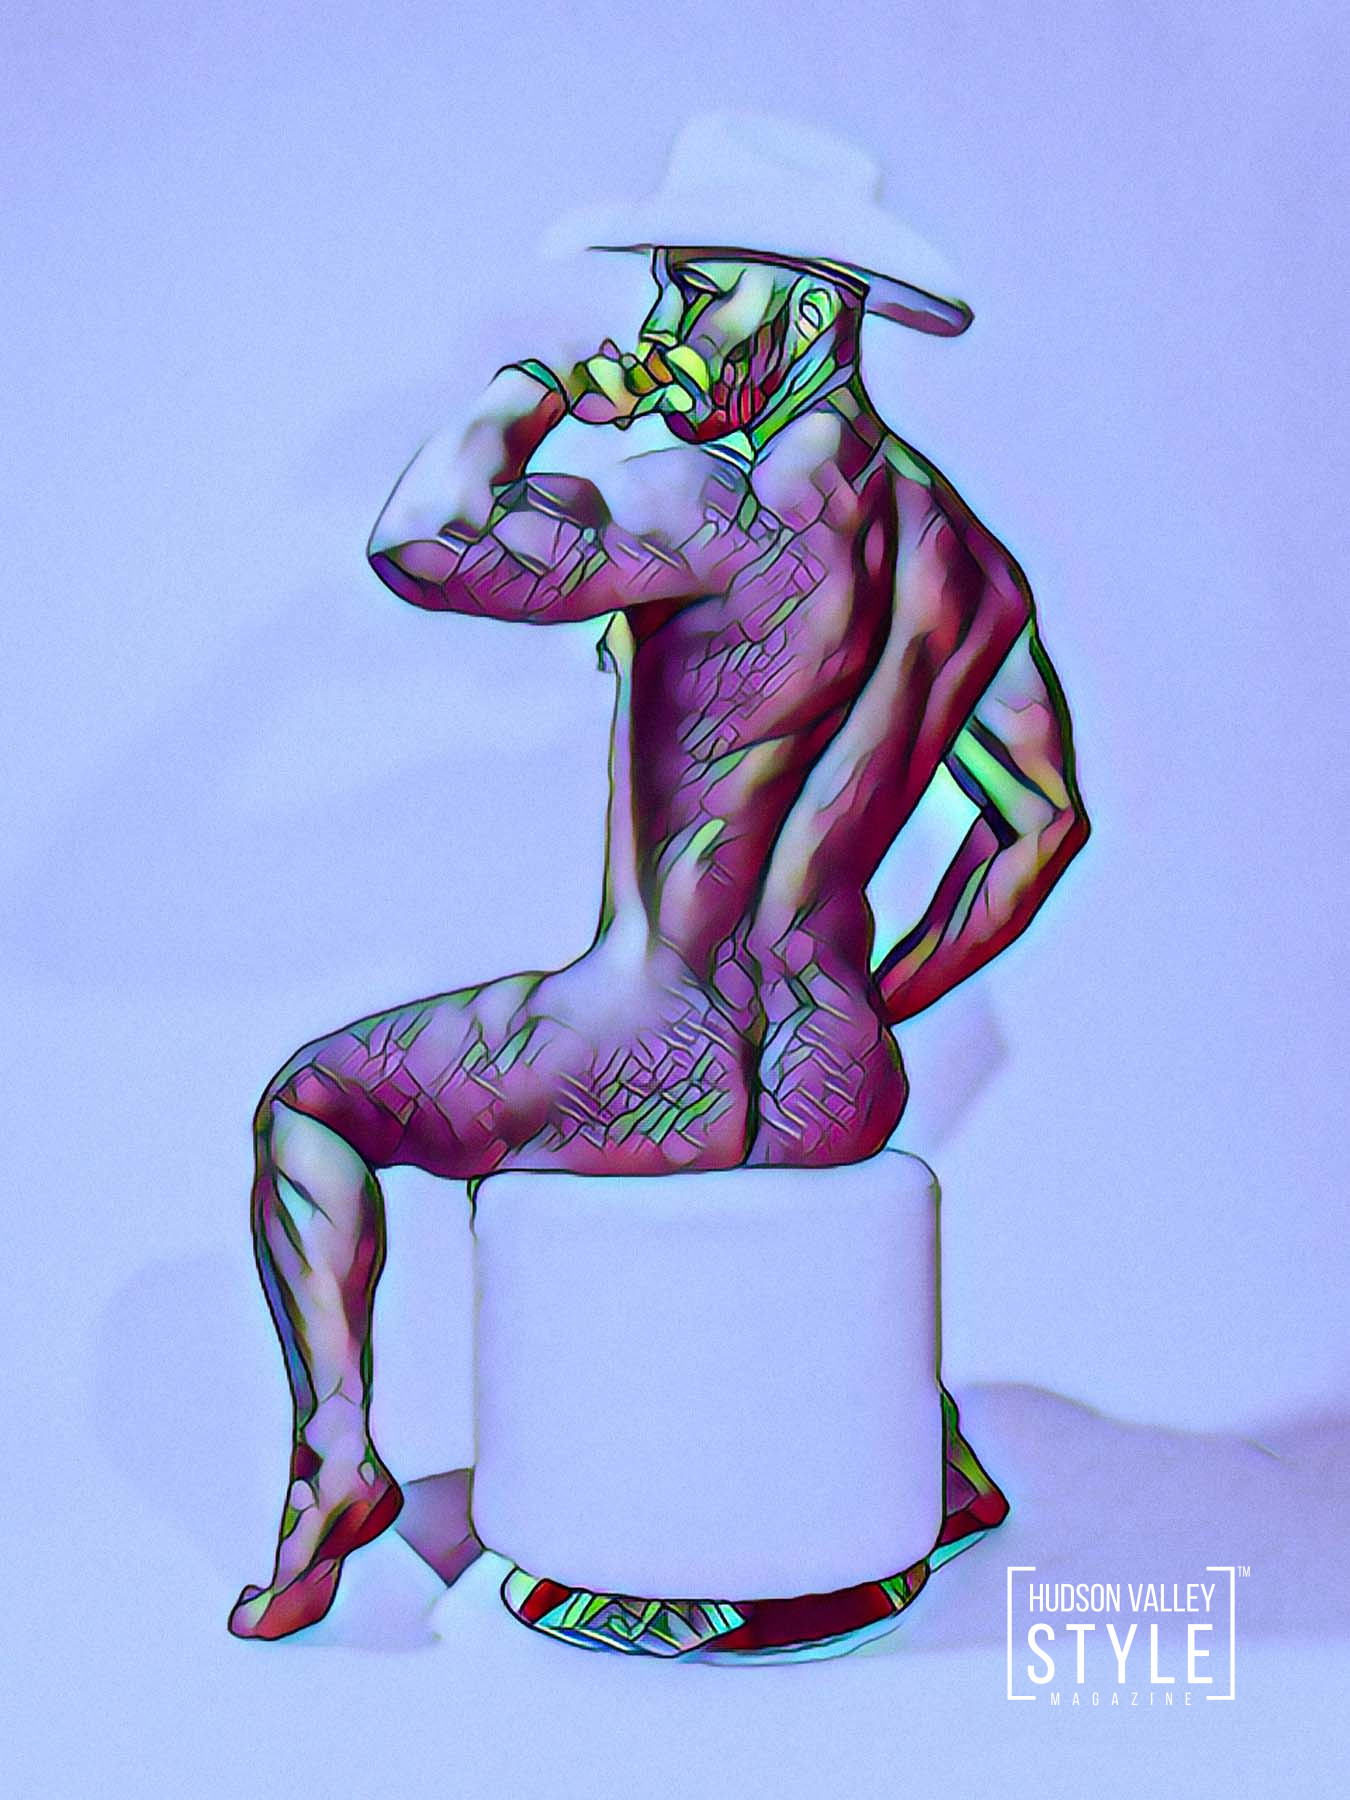 Meet Maxwell Alexander, the Hot New NFT Artist to Follow – LGBTQ Art – Queer Art – Homoerotic Art – Gay Art – Digital Painting – NFT Collectible © 2022 MAXWELL ALEXANDER